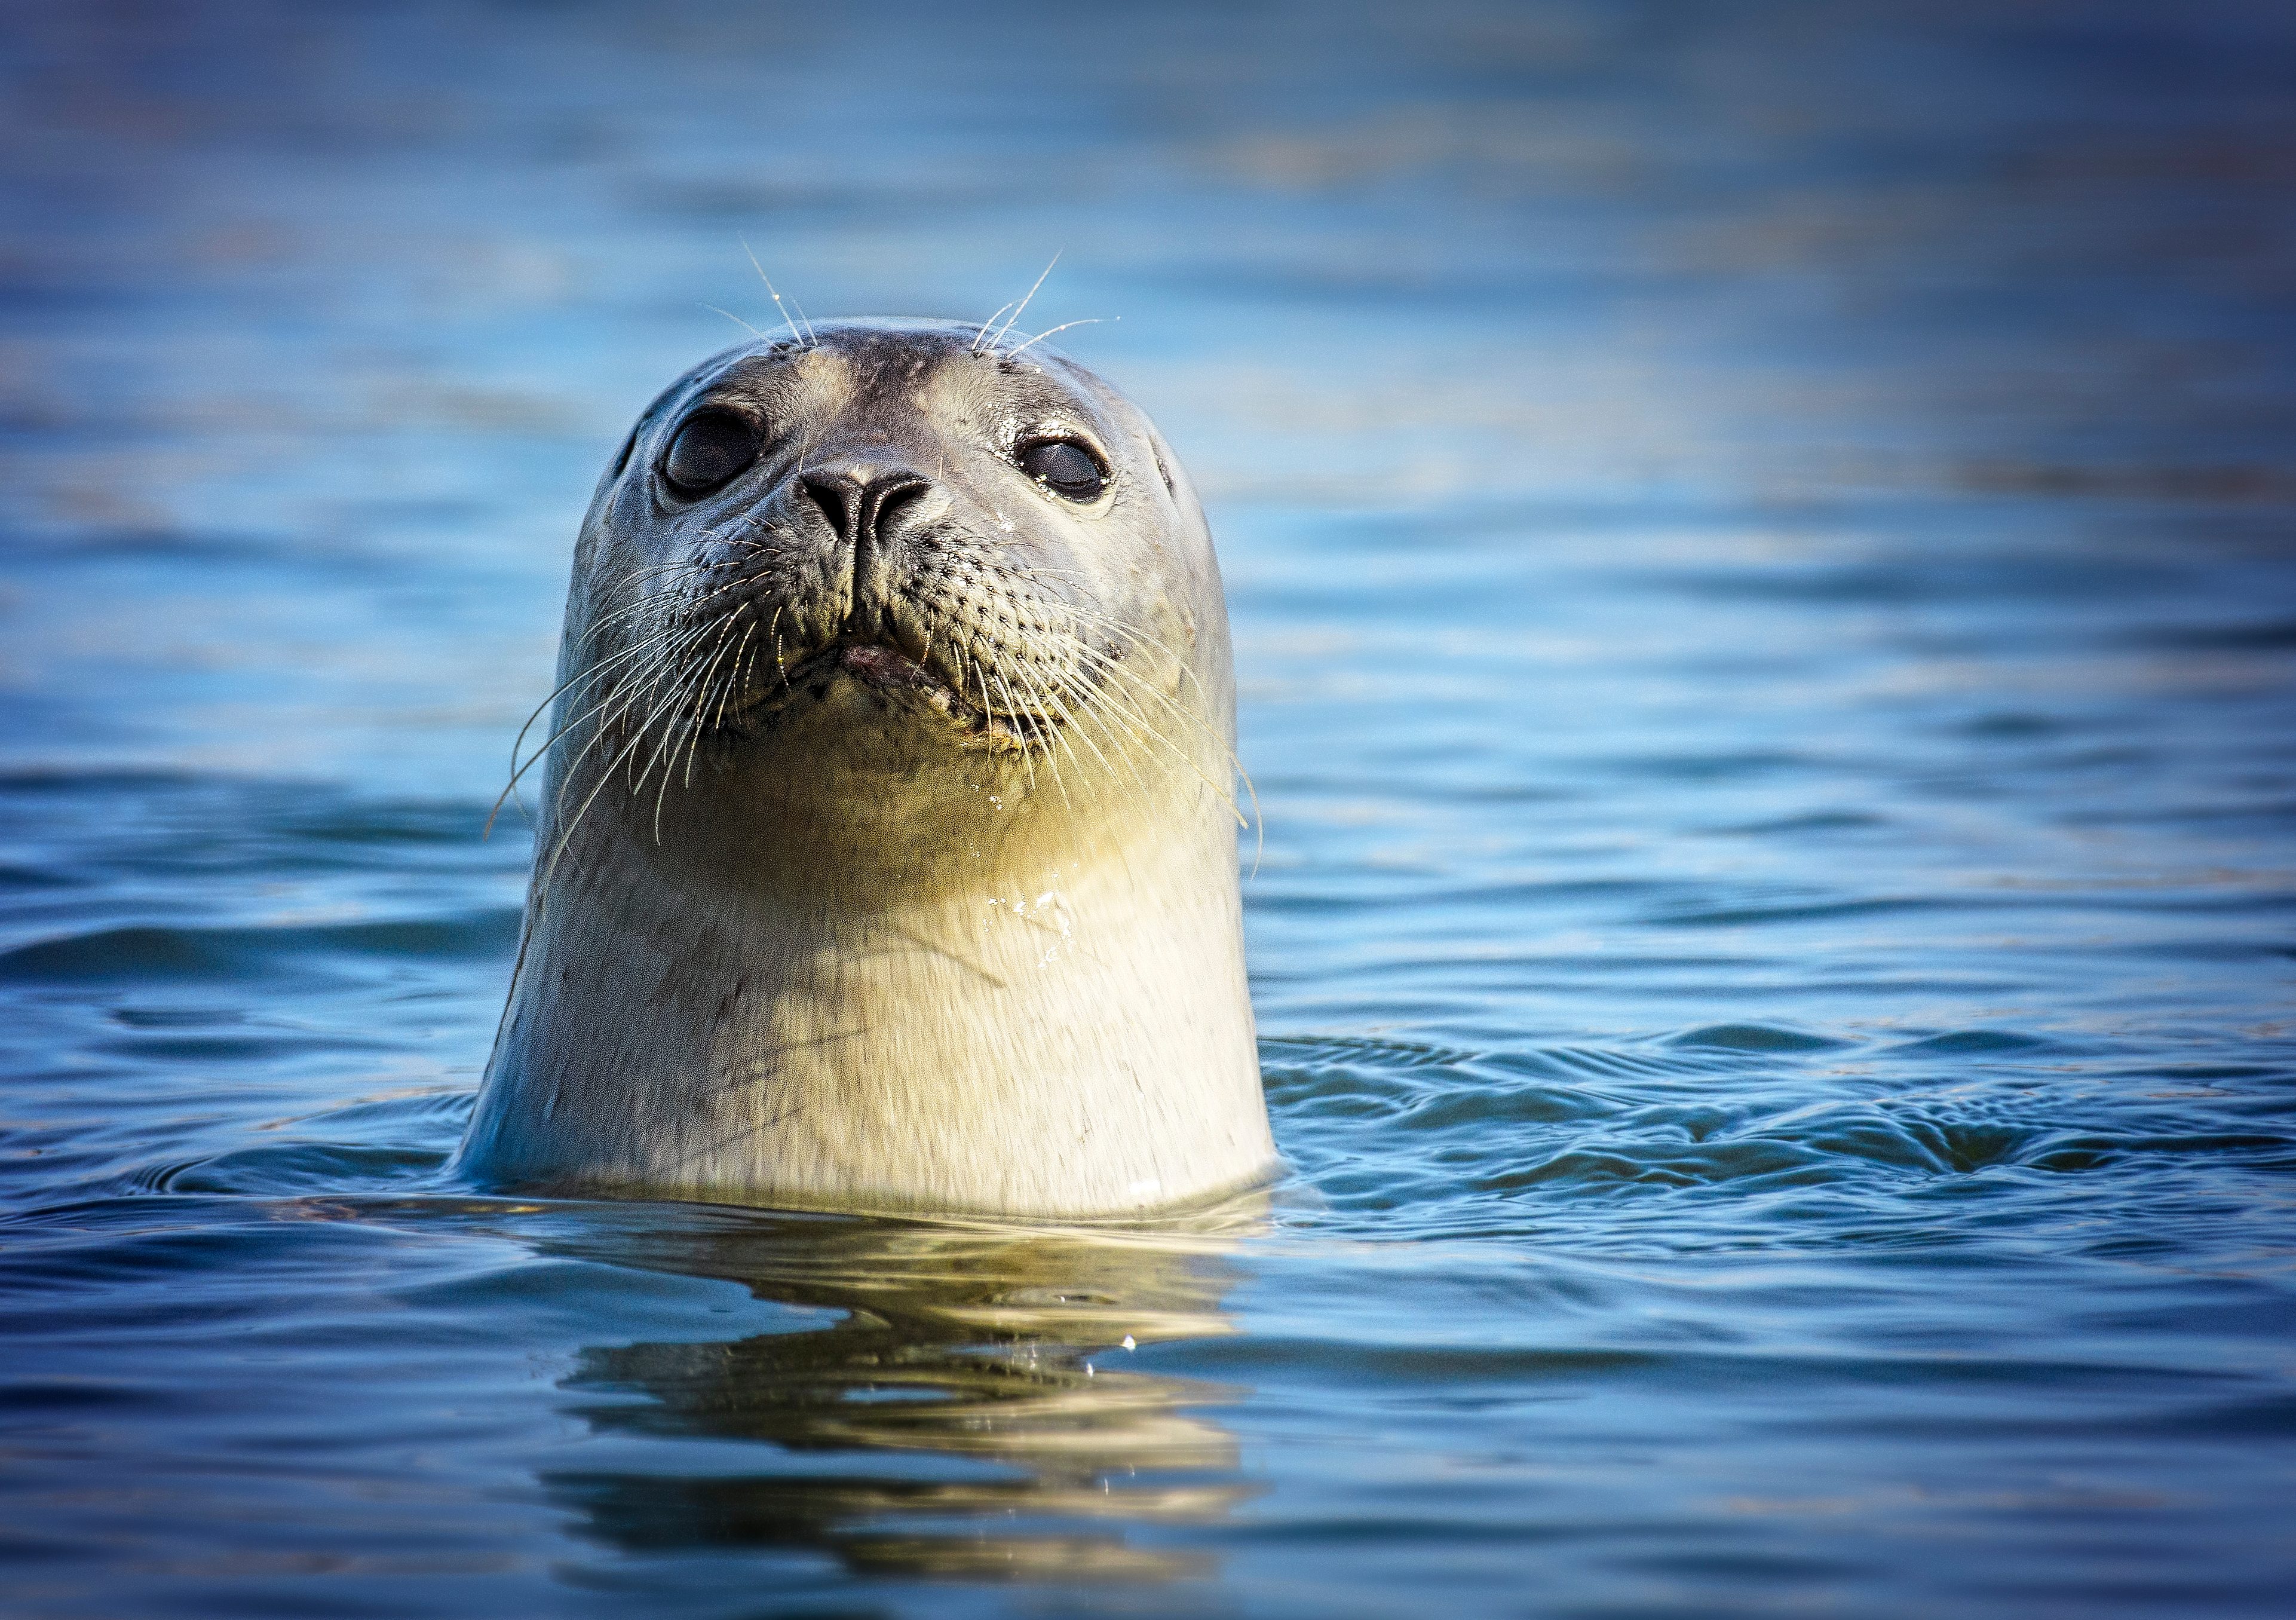 Adorable Harbor Seal Looking at Camera at Robert Moses State Park, Long Island